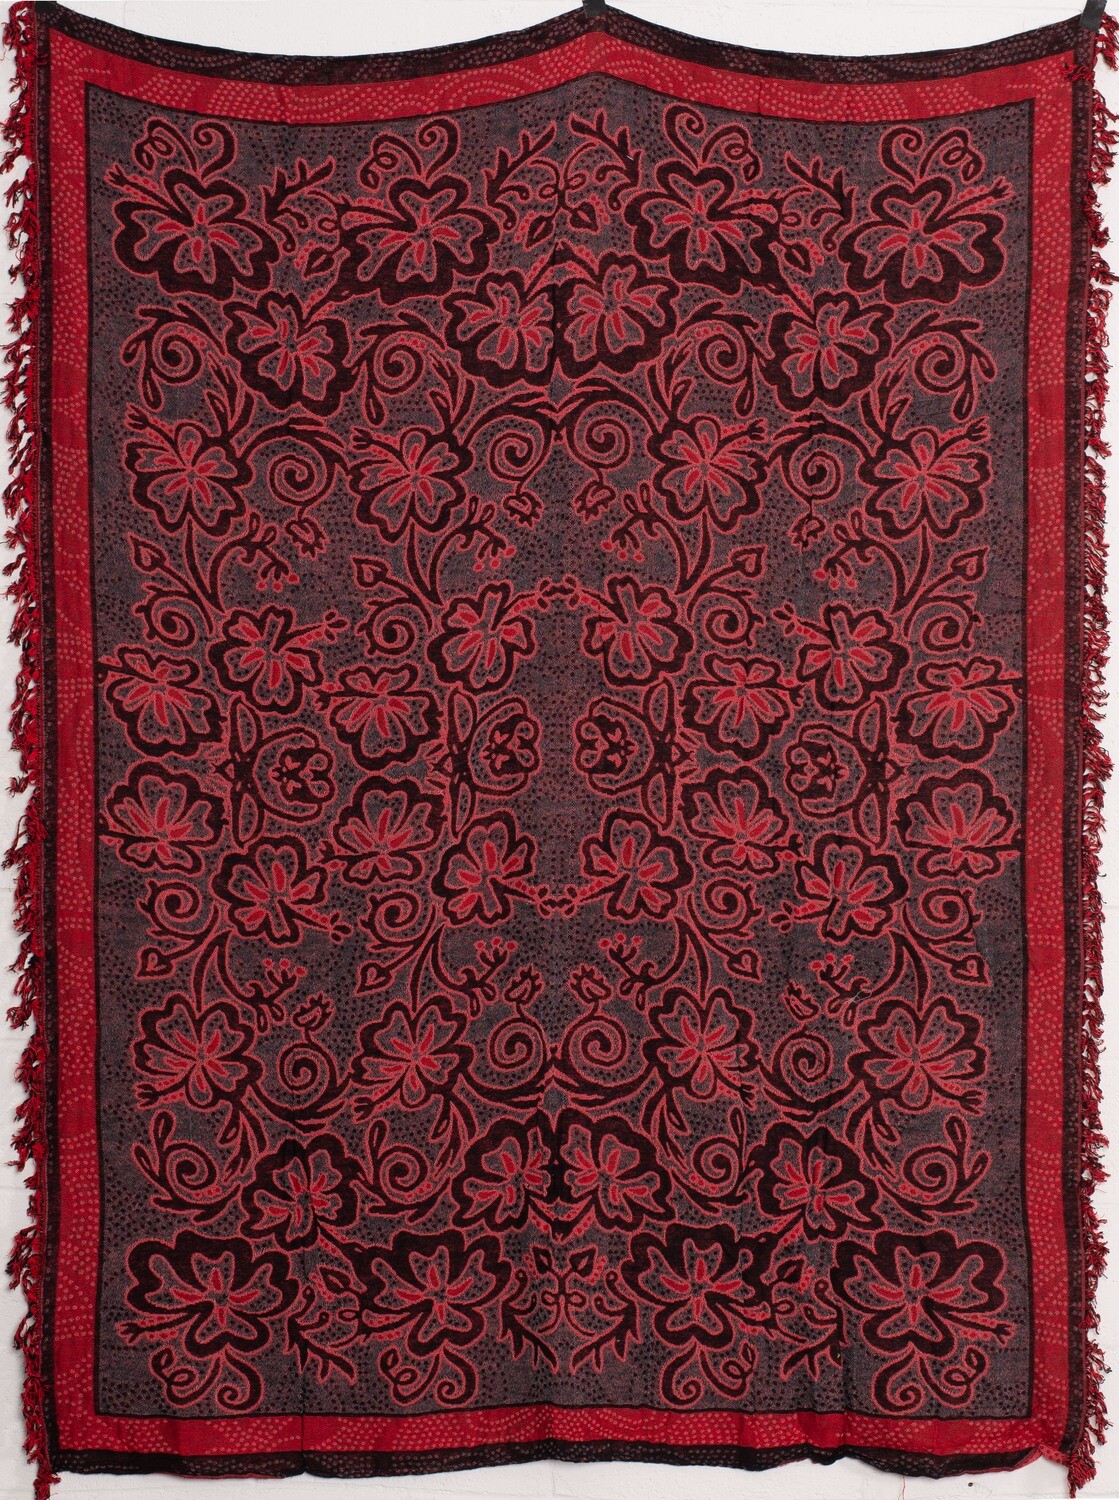 Woven Single Tapestry Blanket